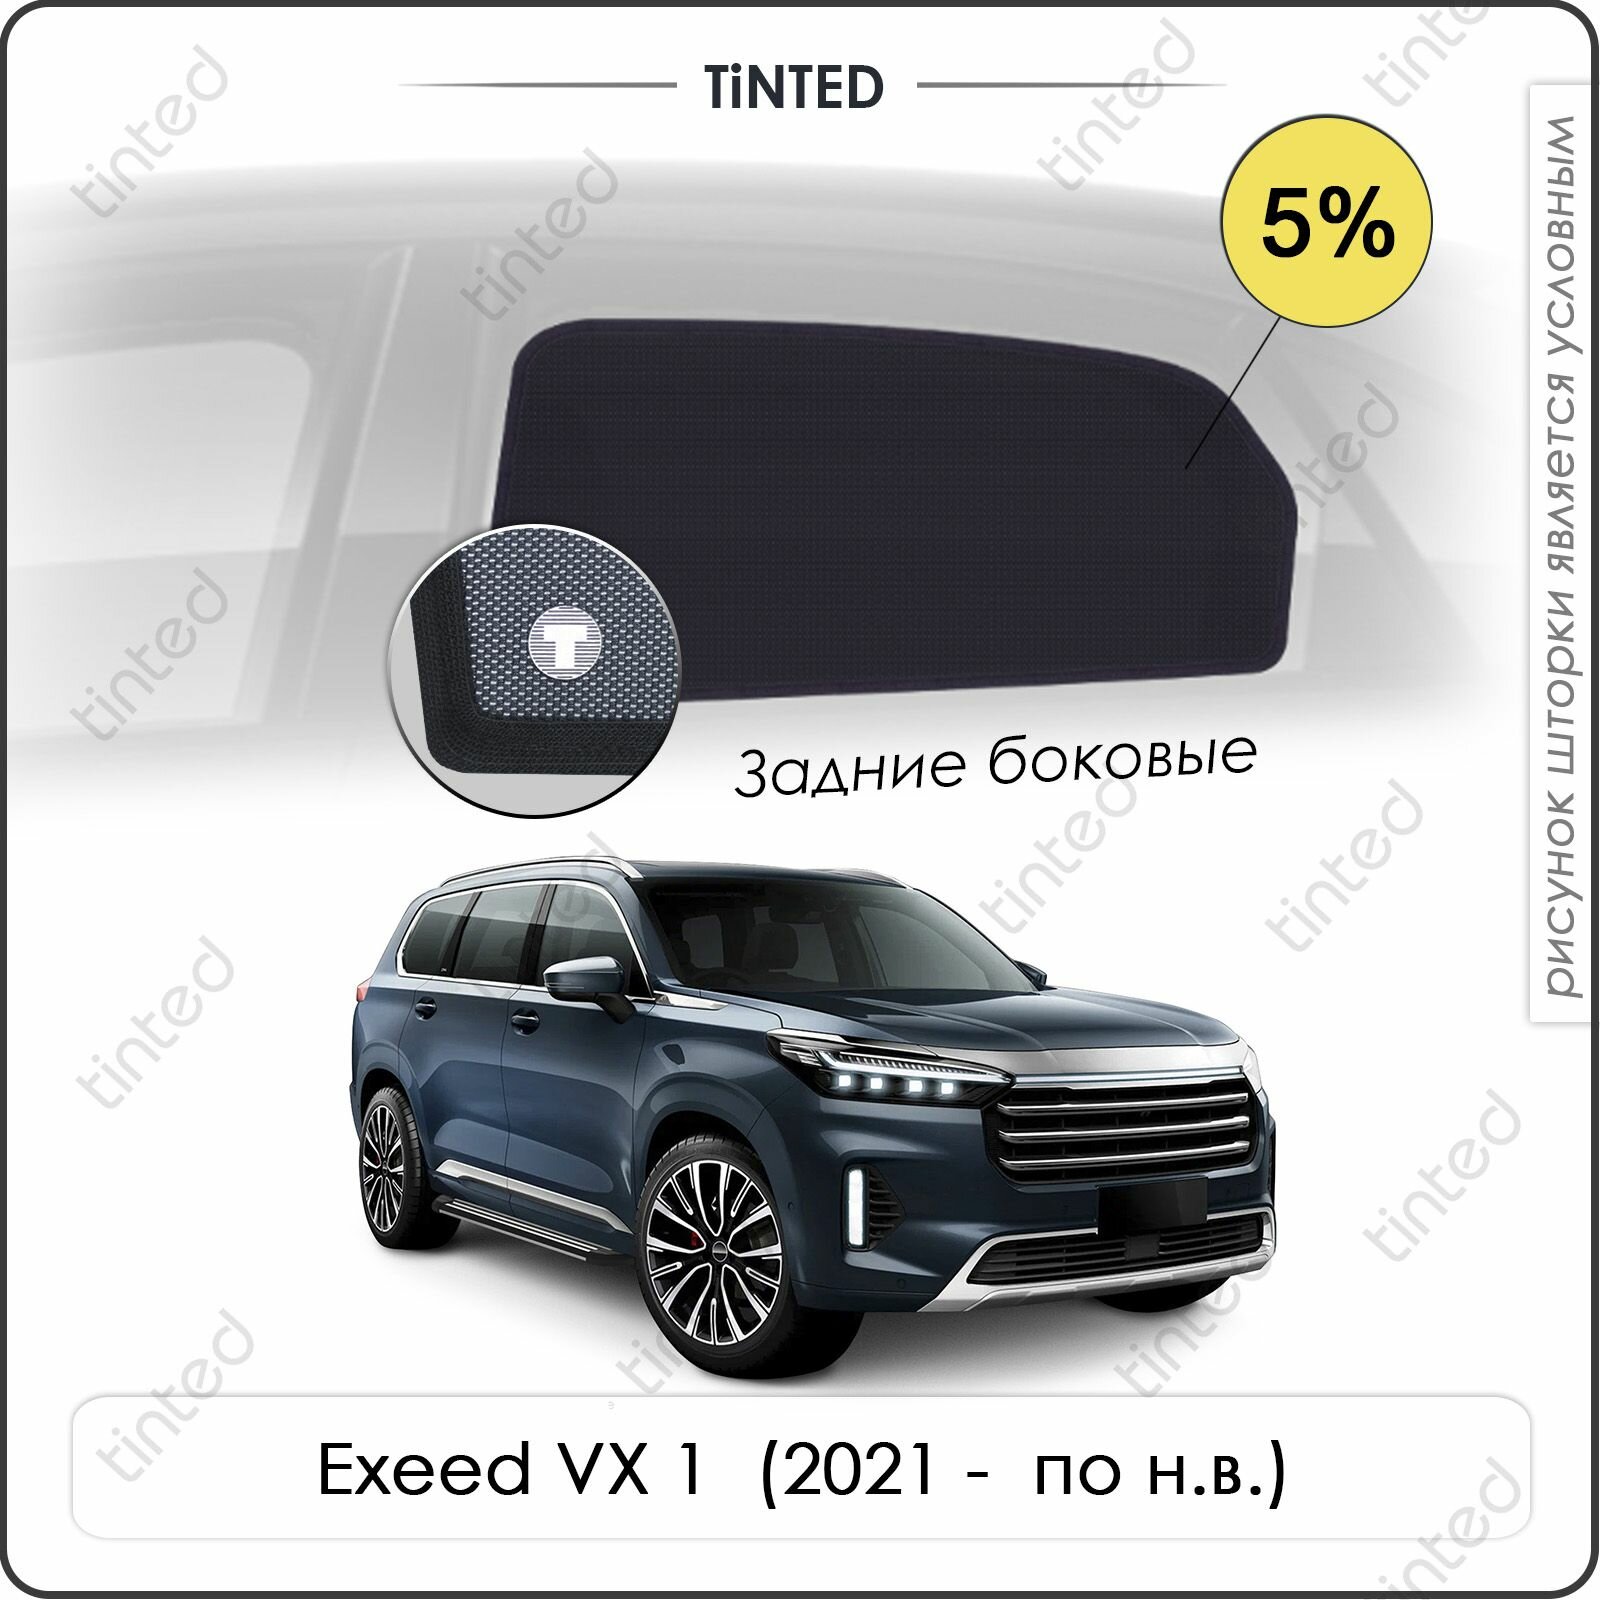 Шторки на автомобиль боковые EXEED VX 1 (2021 - по н. в.) на задние двери 5%, сетки от солнца в машину Эксид ВХ 1, Каркасные автошторки Tinted